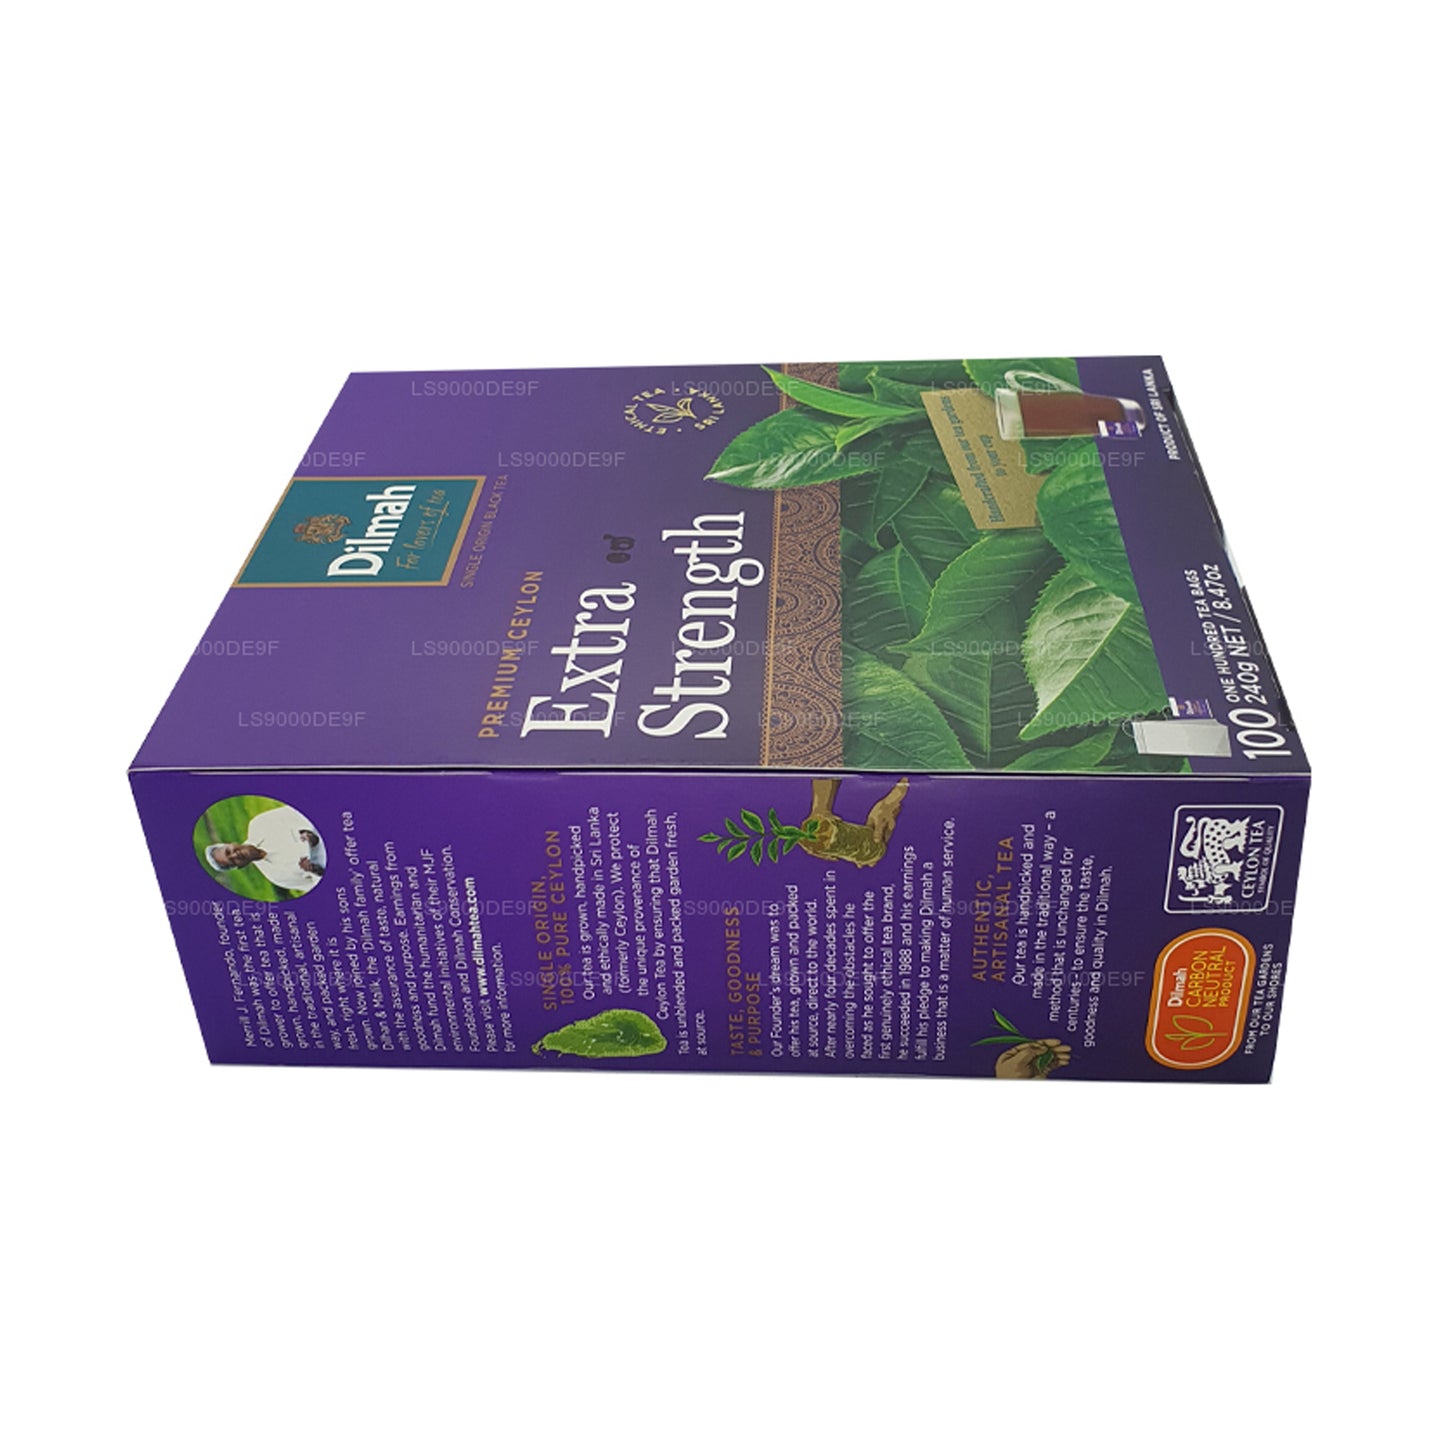 Dilmah Premium ekstra styrke Ceylon te (240 g) 100 teposer